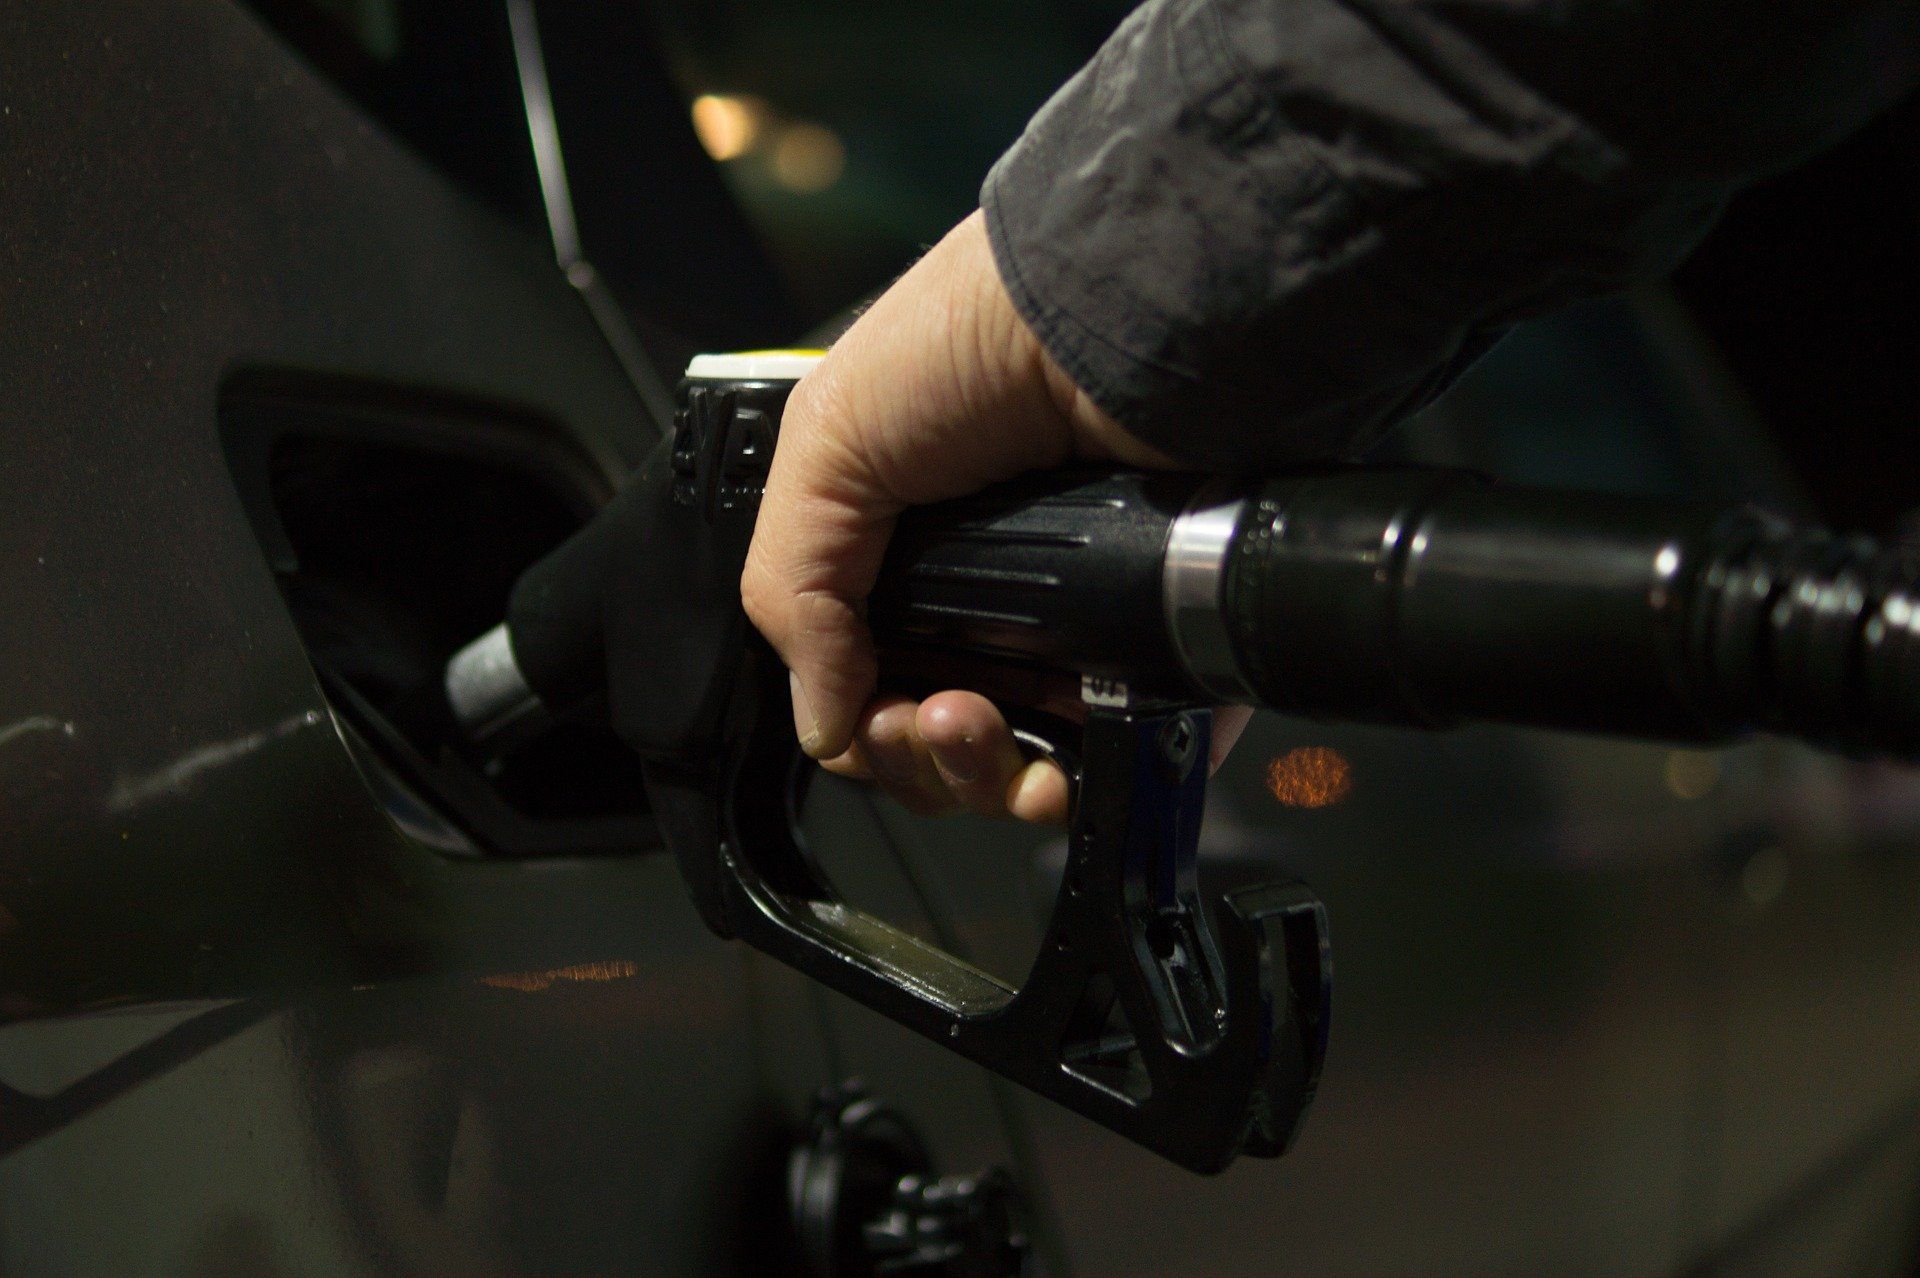 Fuel price June 30, 2022: Petrol Rs 96.72, diesel Rs 89.62 in Delhi